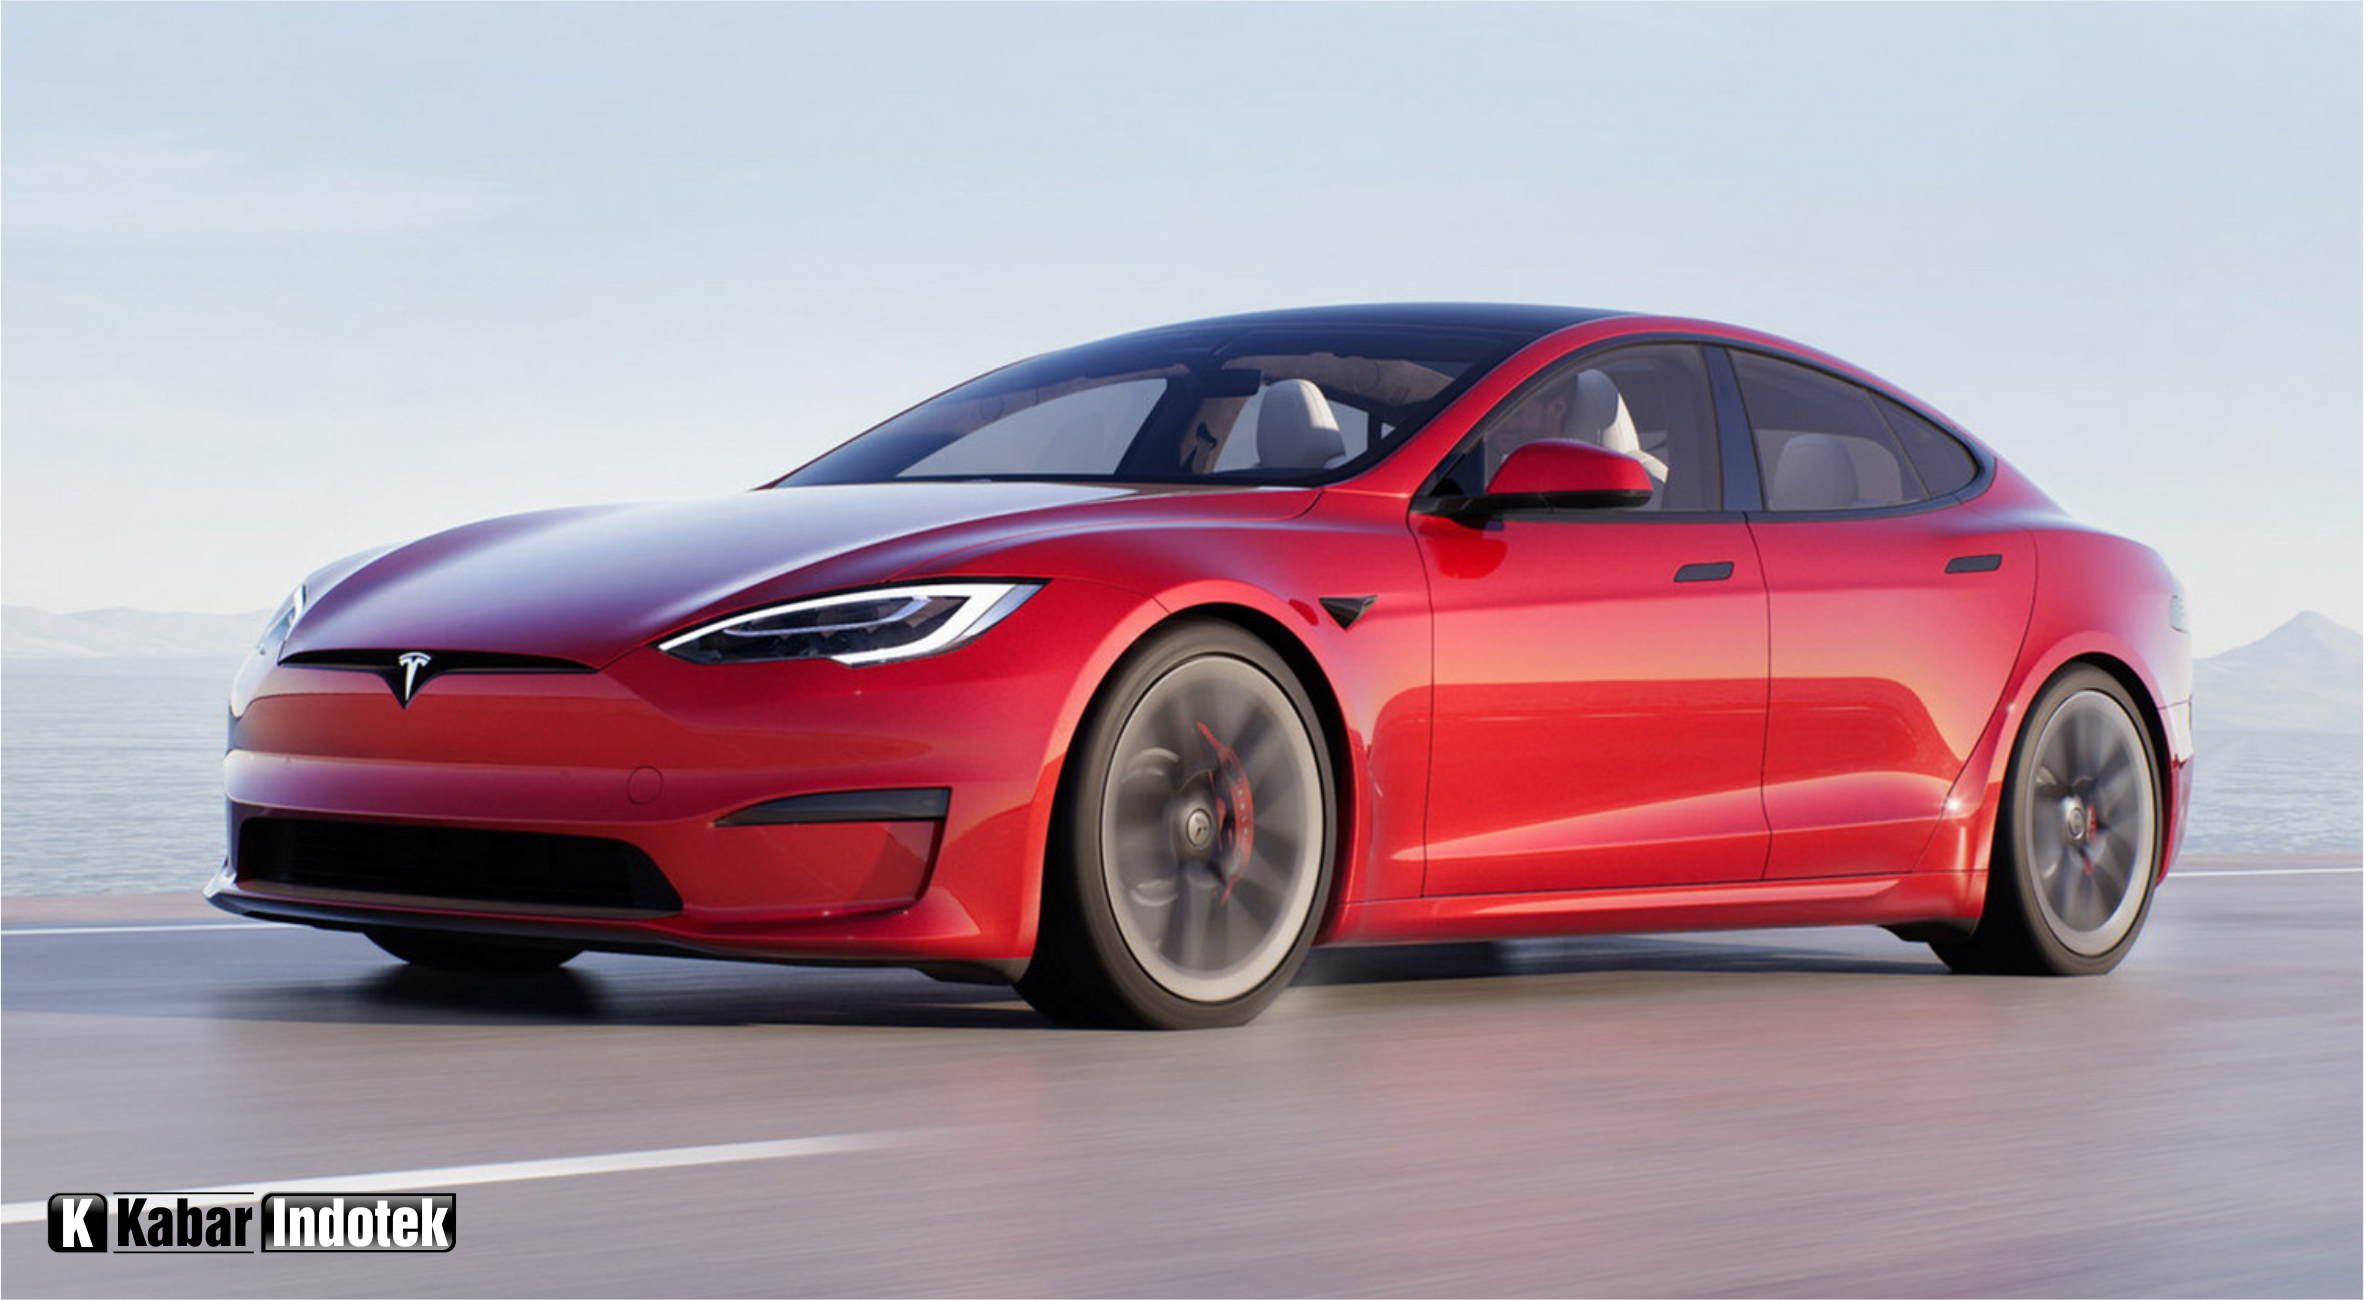 Harga Mobil Tesla 2021 Terbaru